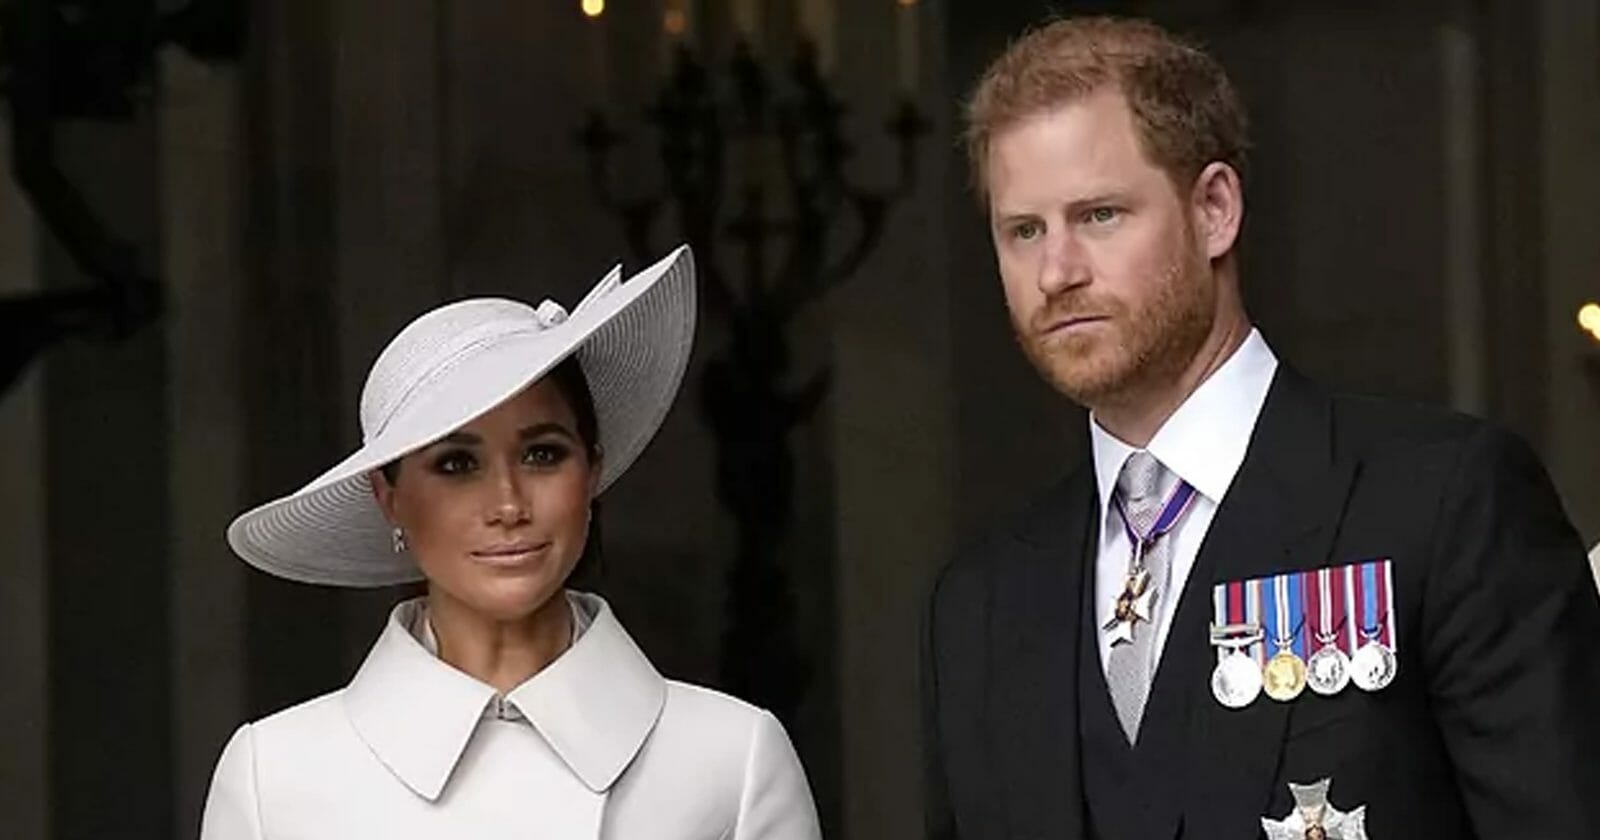 الملكة إليزابيث وزواج الامير هاري watanserb.com